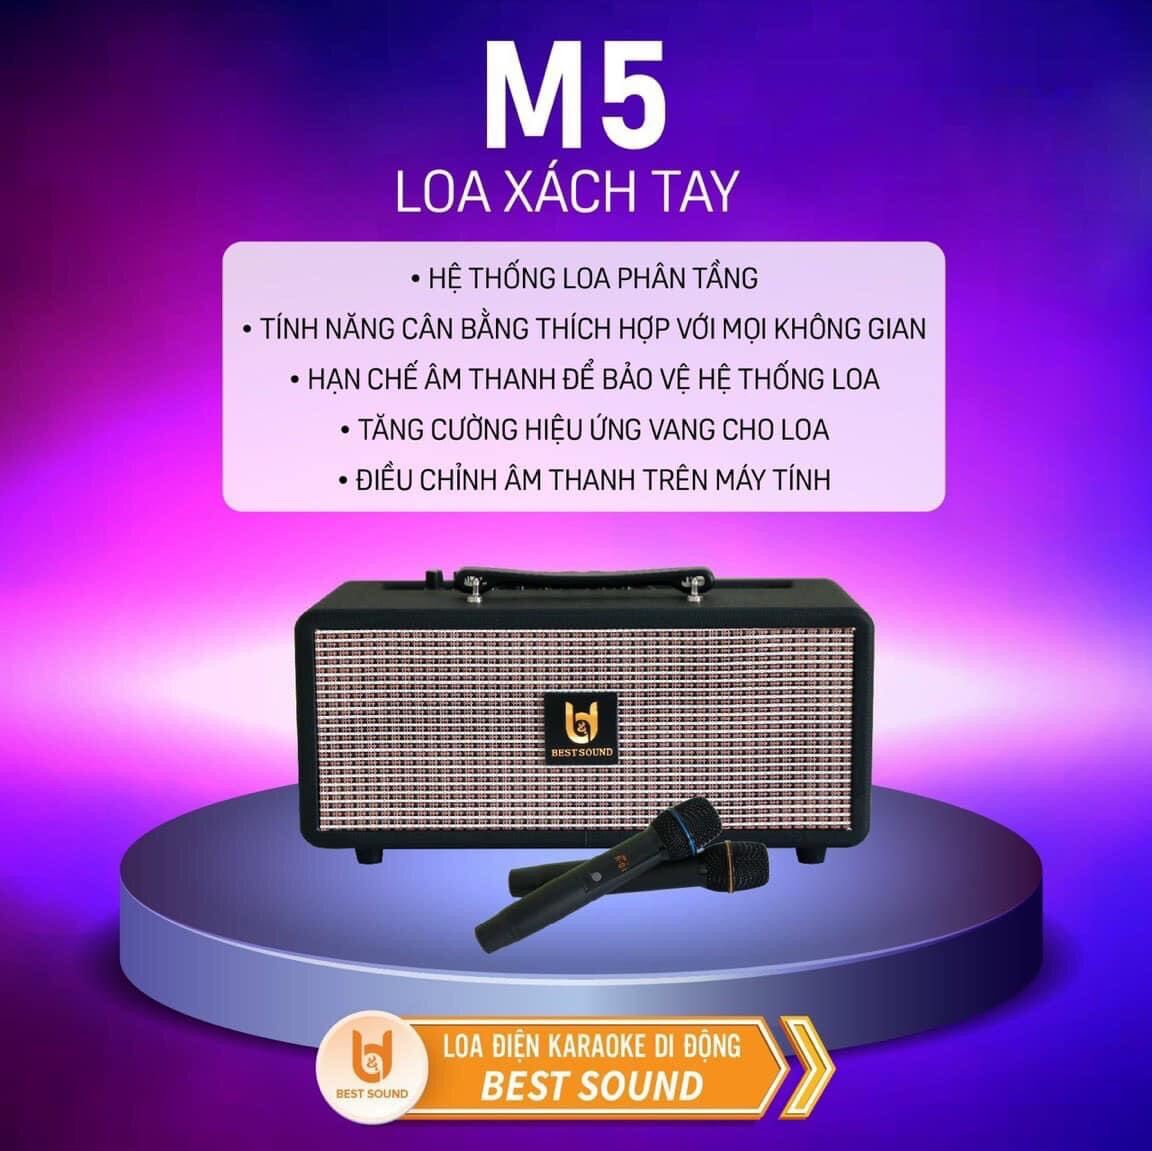 Loa karaoke xách tay chính hãng BestSound M5 Loa 2 đường tiếng, có 2 loa